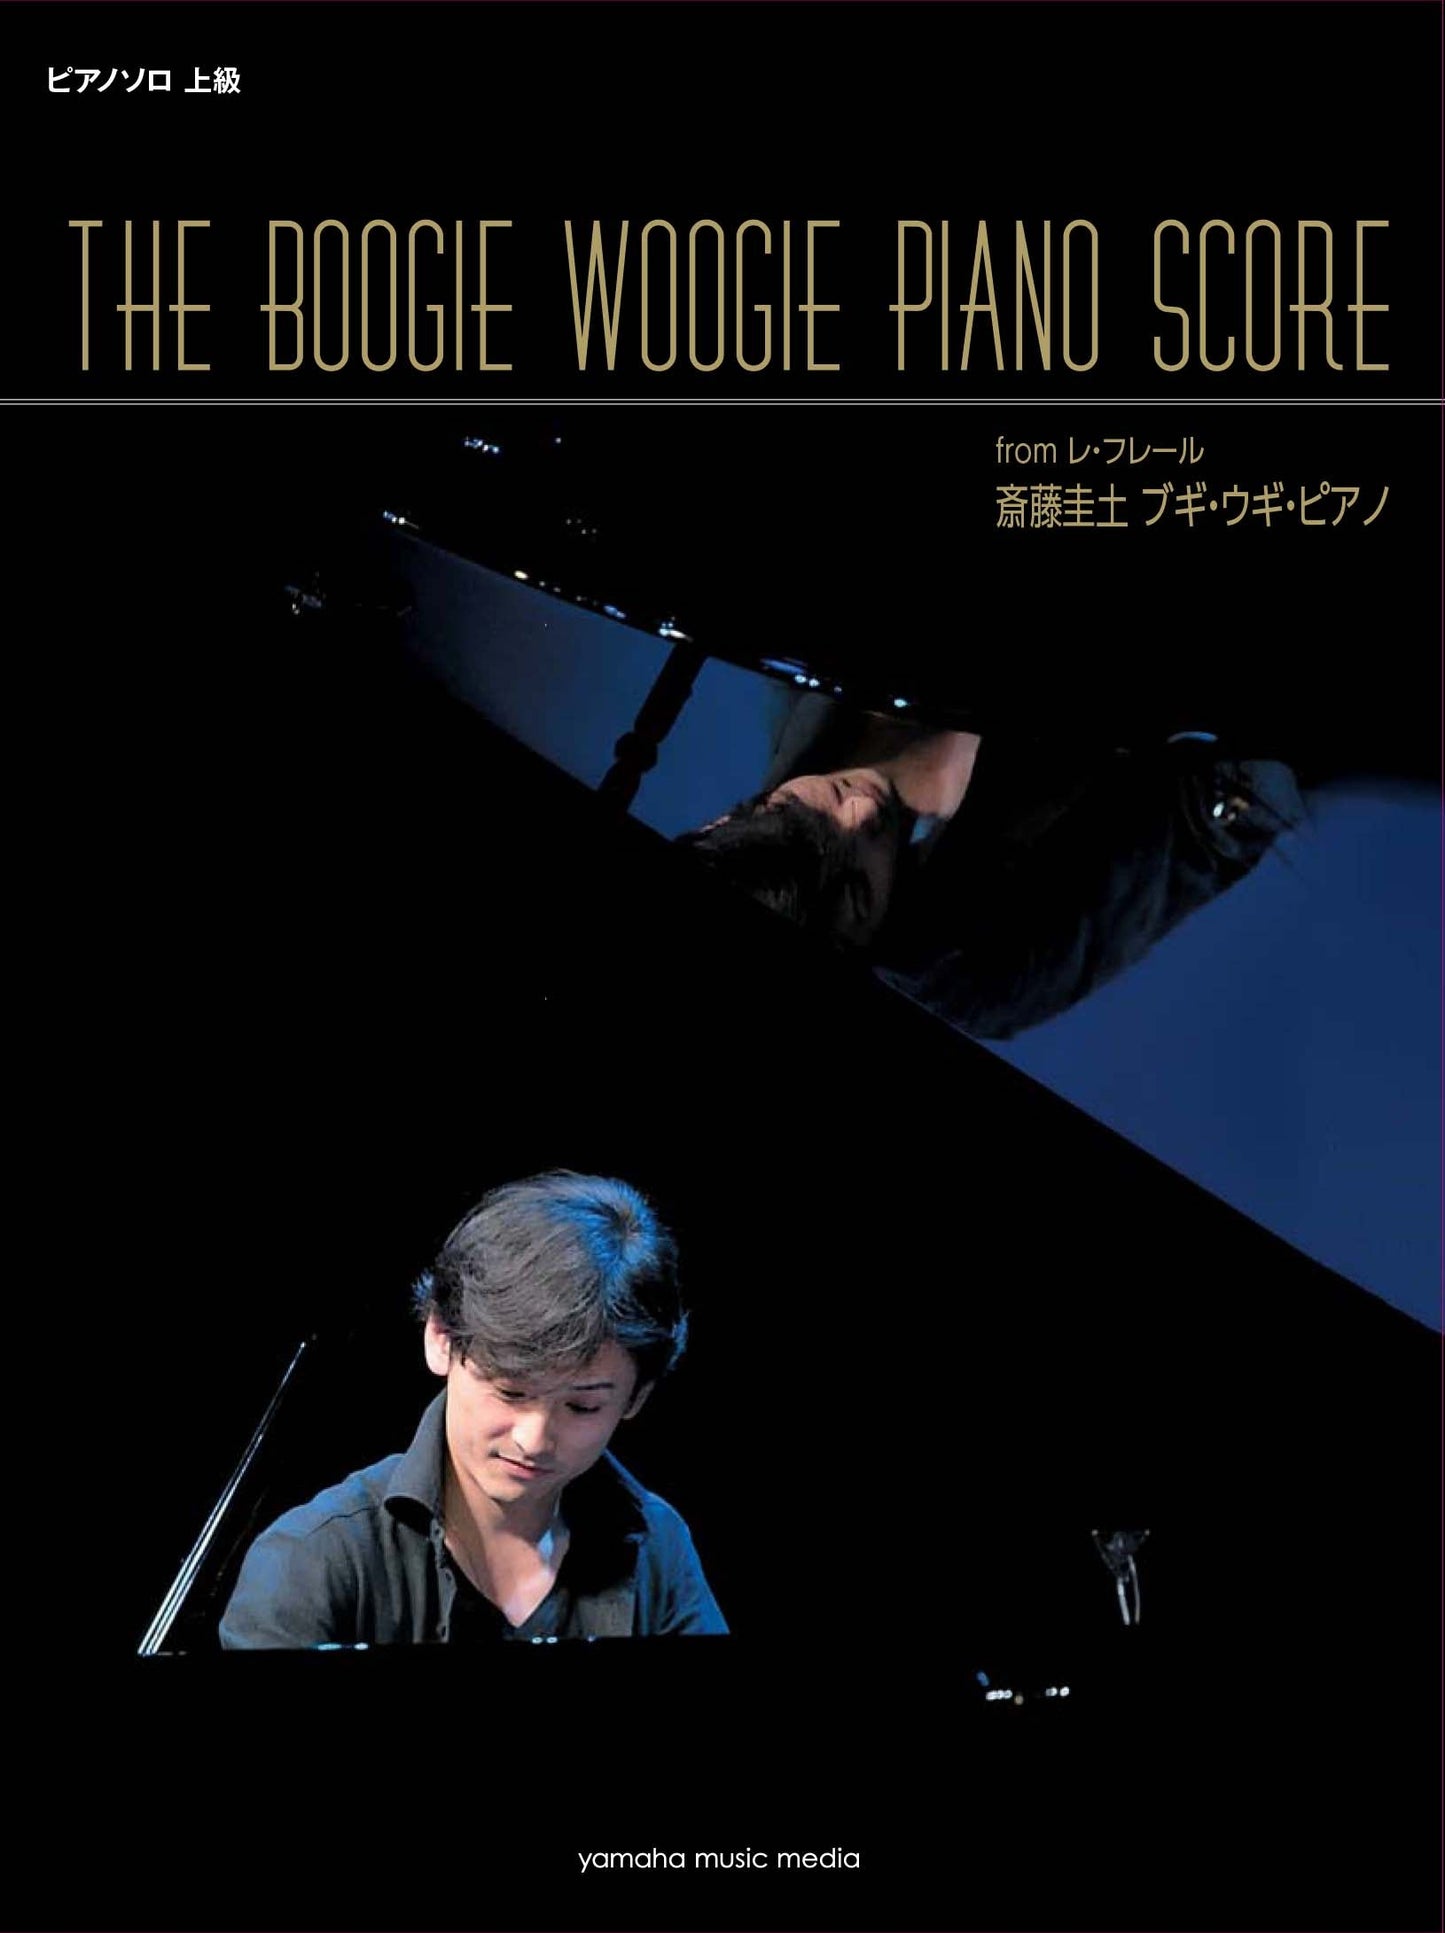 ピアノソロ 斎藤圭土(from レ・フレール) ブギ・ウギ・ピアノ 「THE BOOGIE WOOGIE PIANO SCORE」